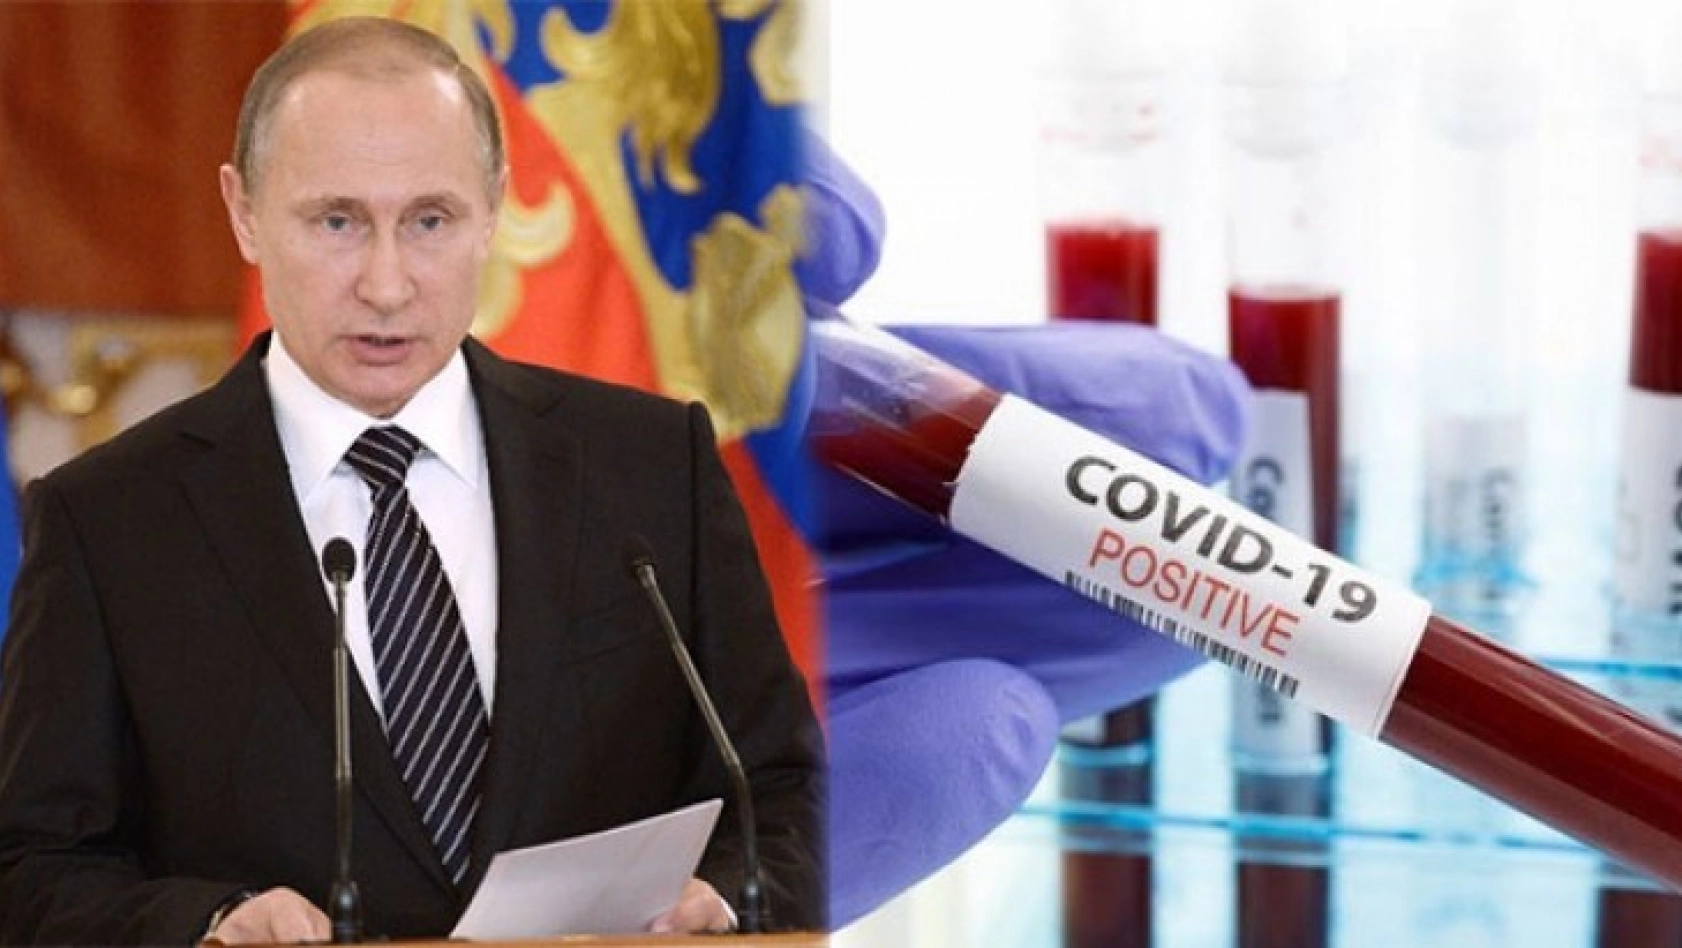 Rusya, Aşıyı Uygulayacağı Tarihi Açıkladı